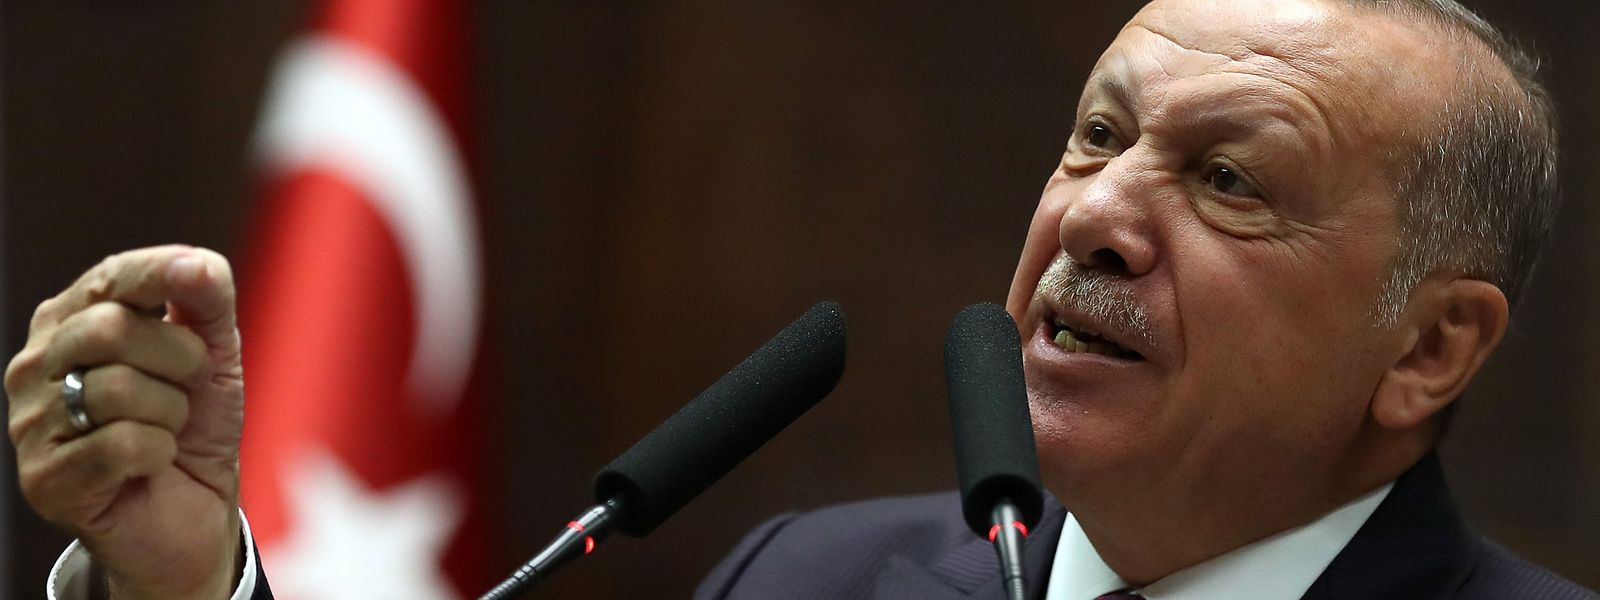 Der türkische Präsident Recep Tayyip Erdogan und die USA liegen derzeit im Clinch.